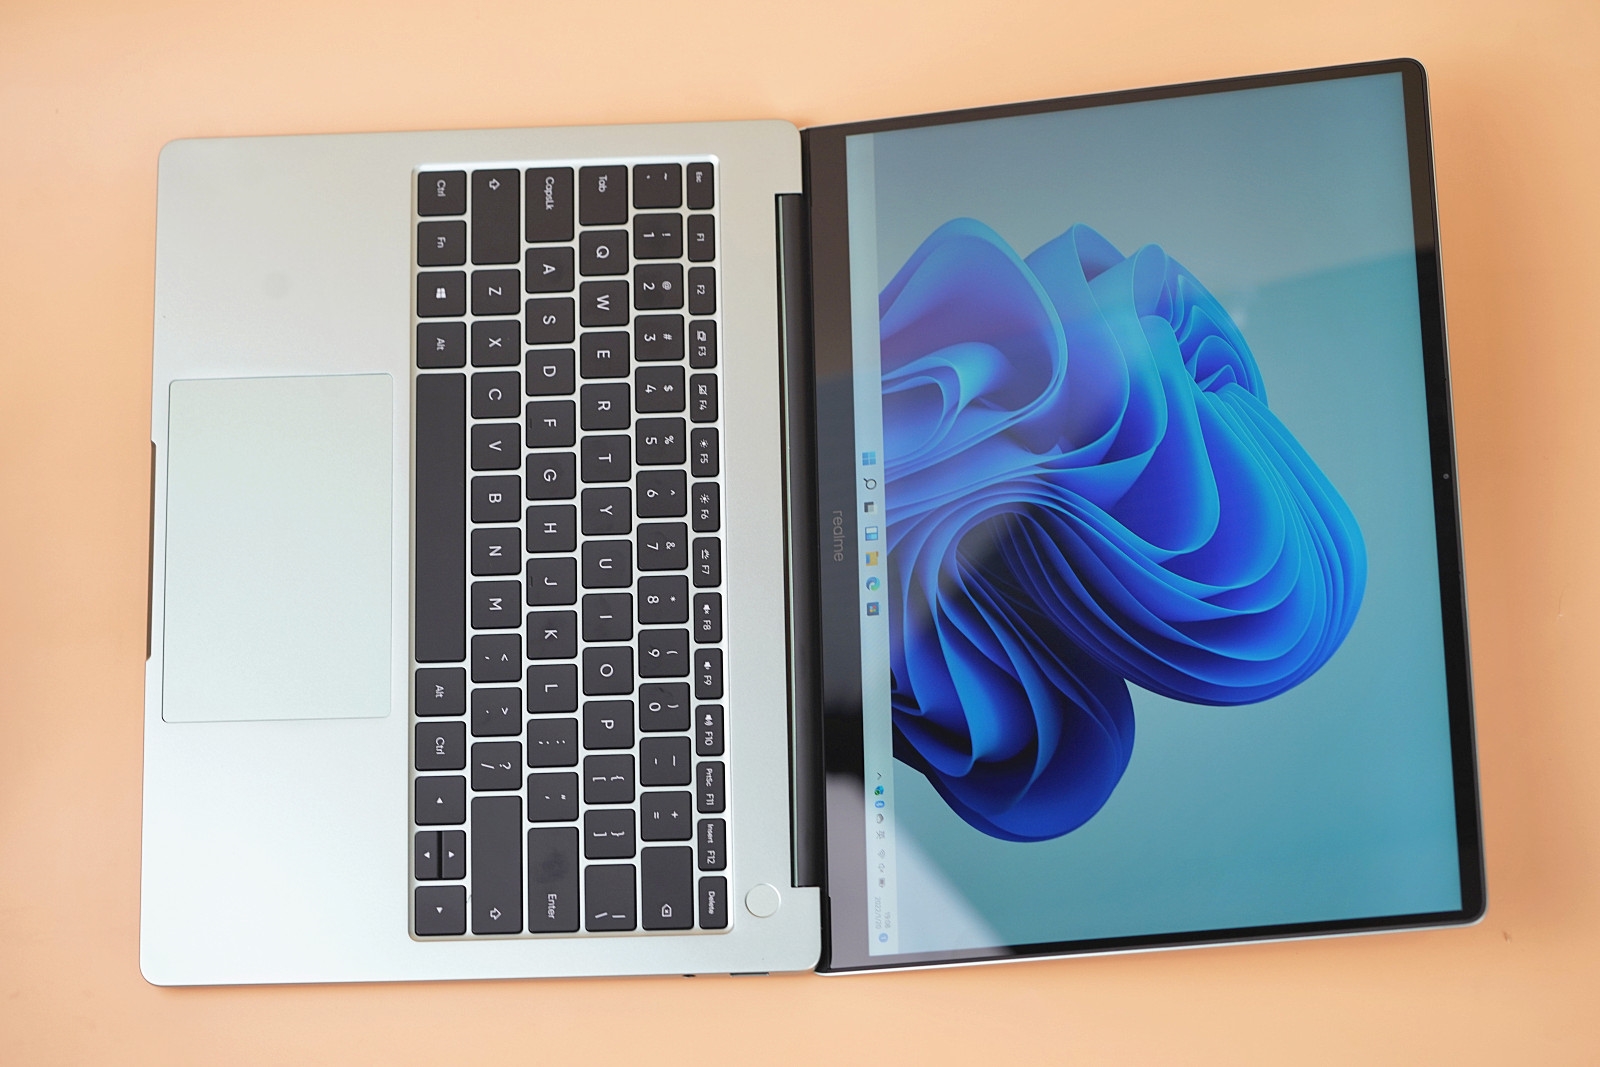 5000元內性能最強輕薄本 realmeBook增強版天青色圖賞